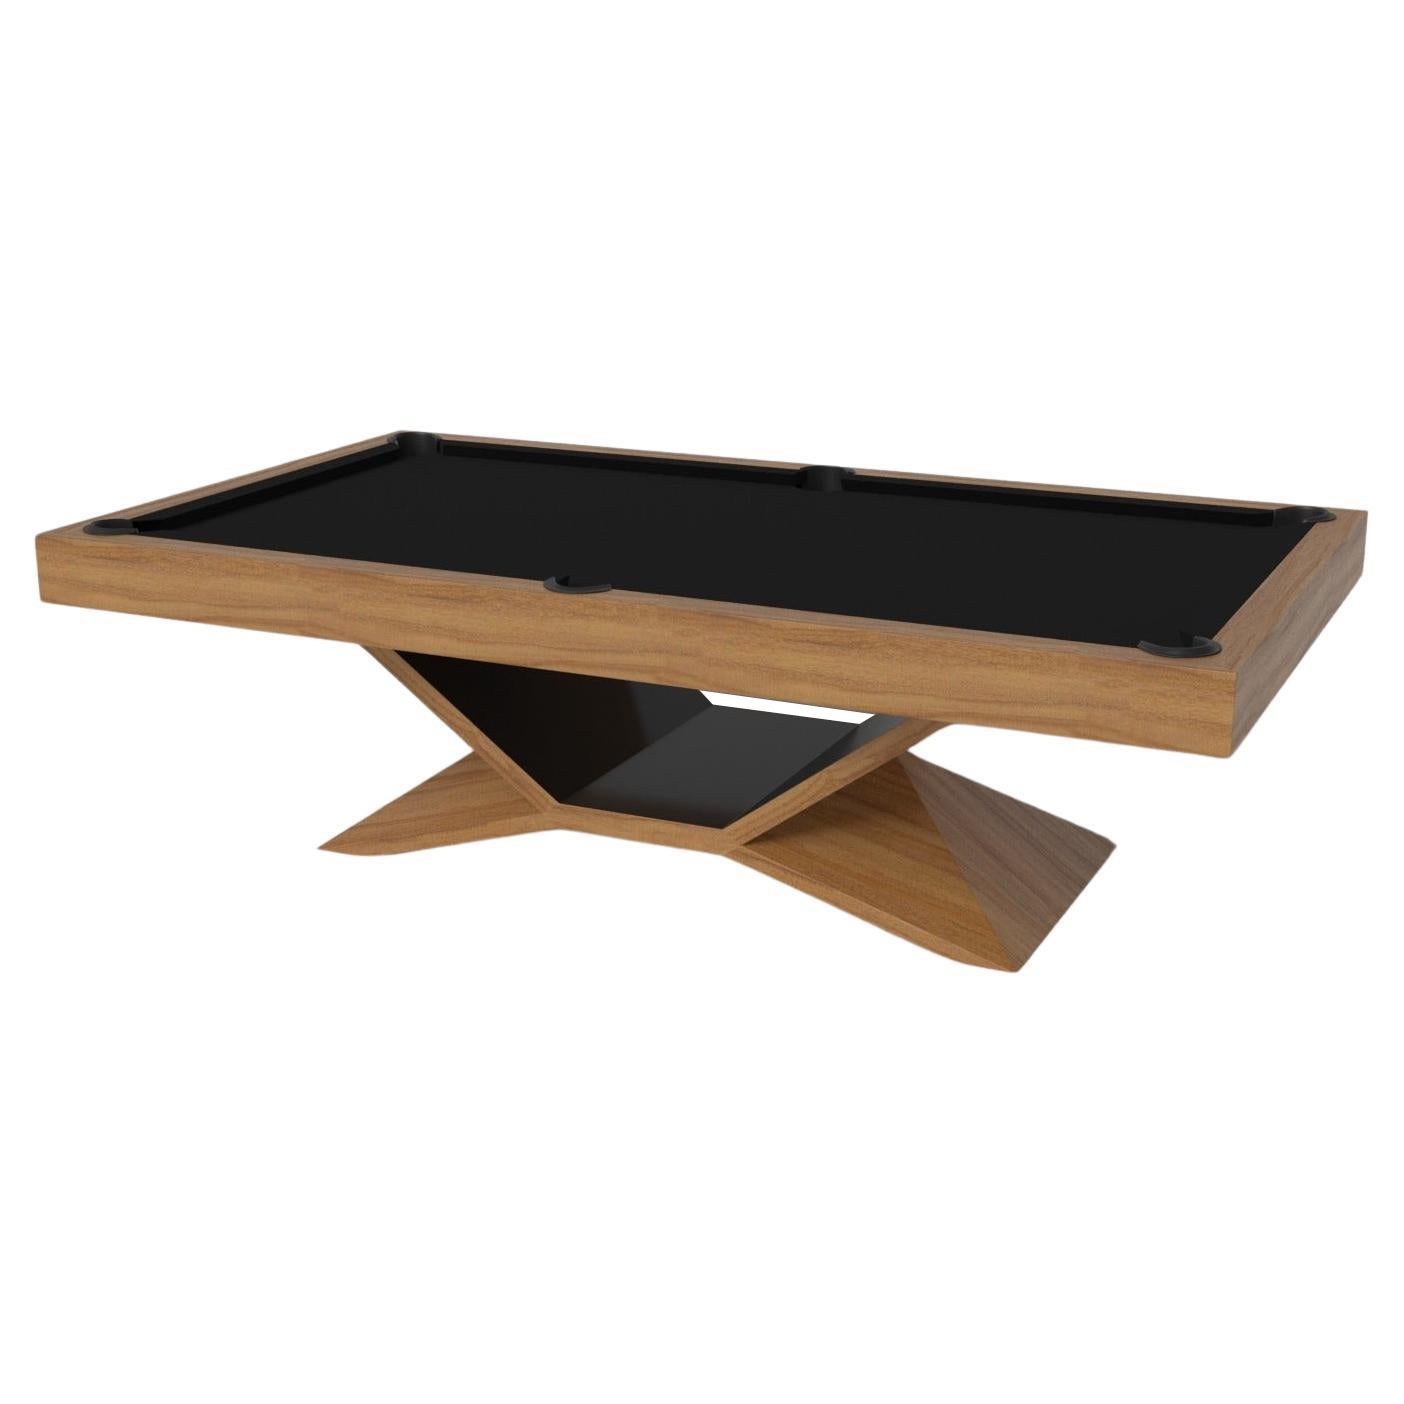 Elevate Customs Kors Pool Table / Solid Teak Wood in 9' - Made in USA